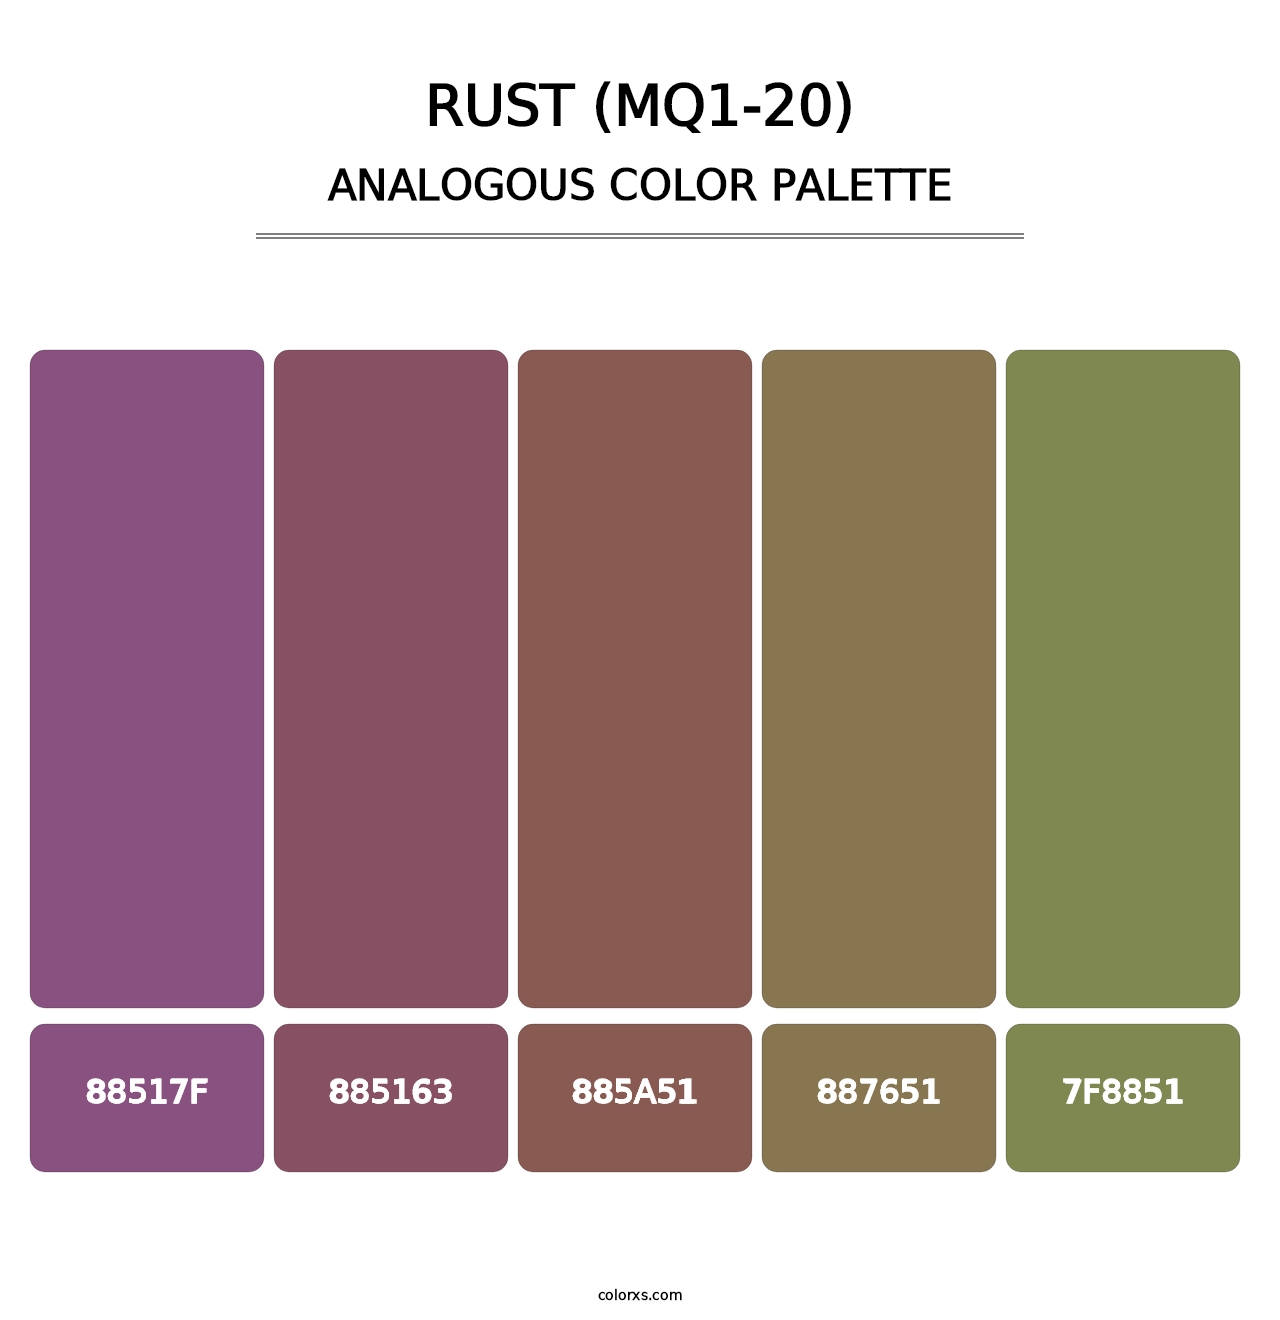 Rust (MQ1-20) - Analogous Color Palette